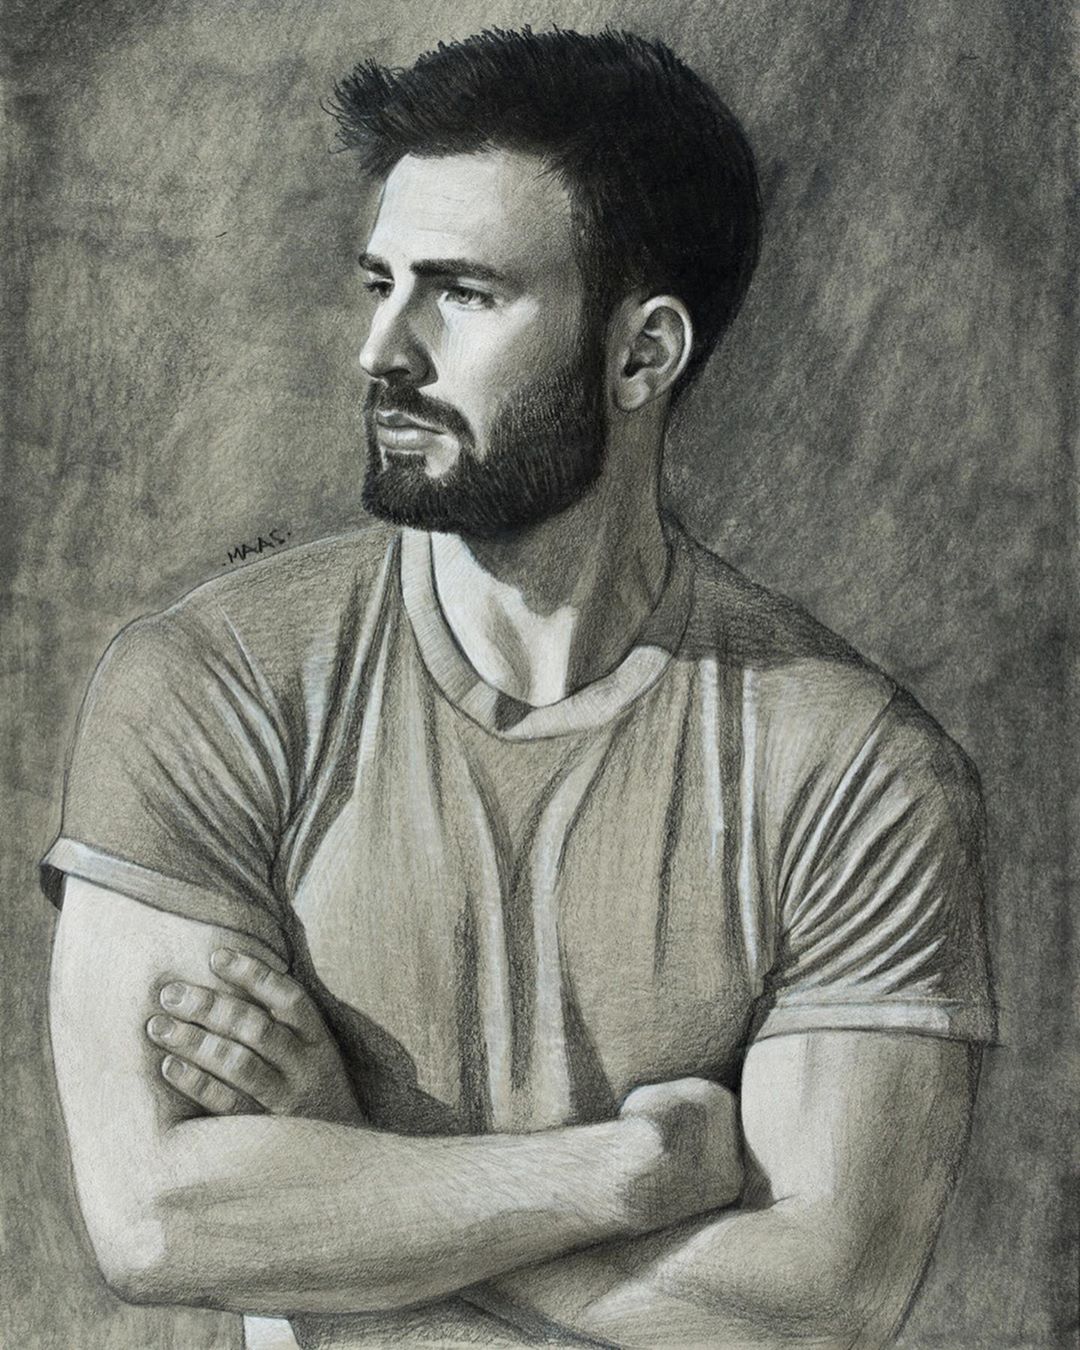 Chris Evans Portrait Drawing